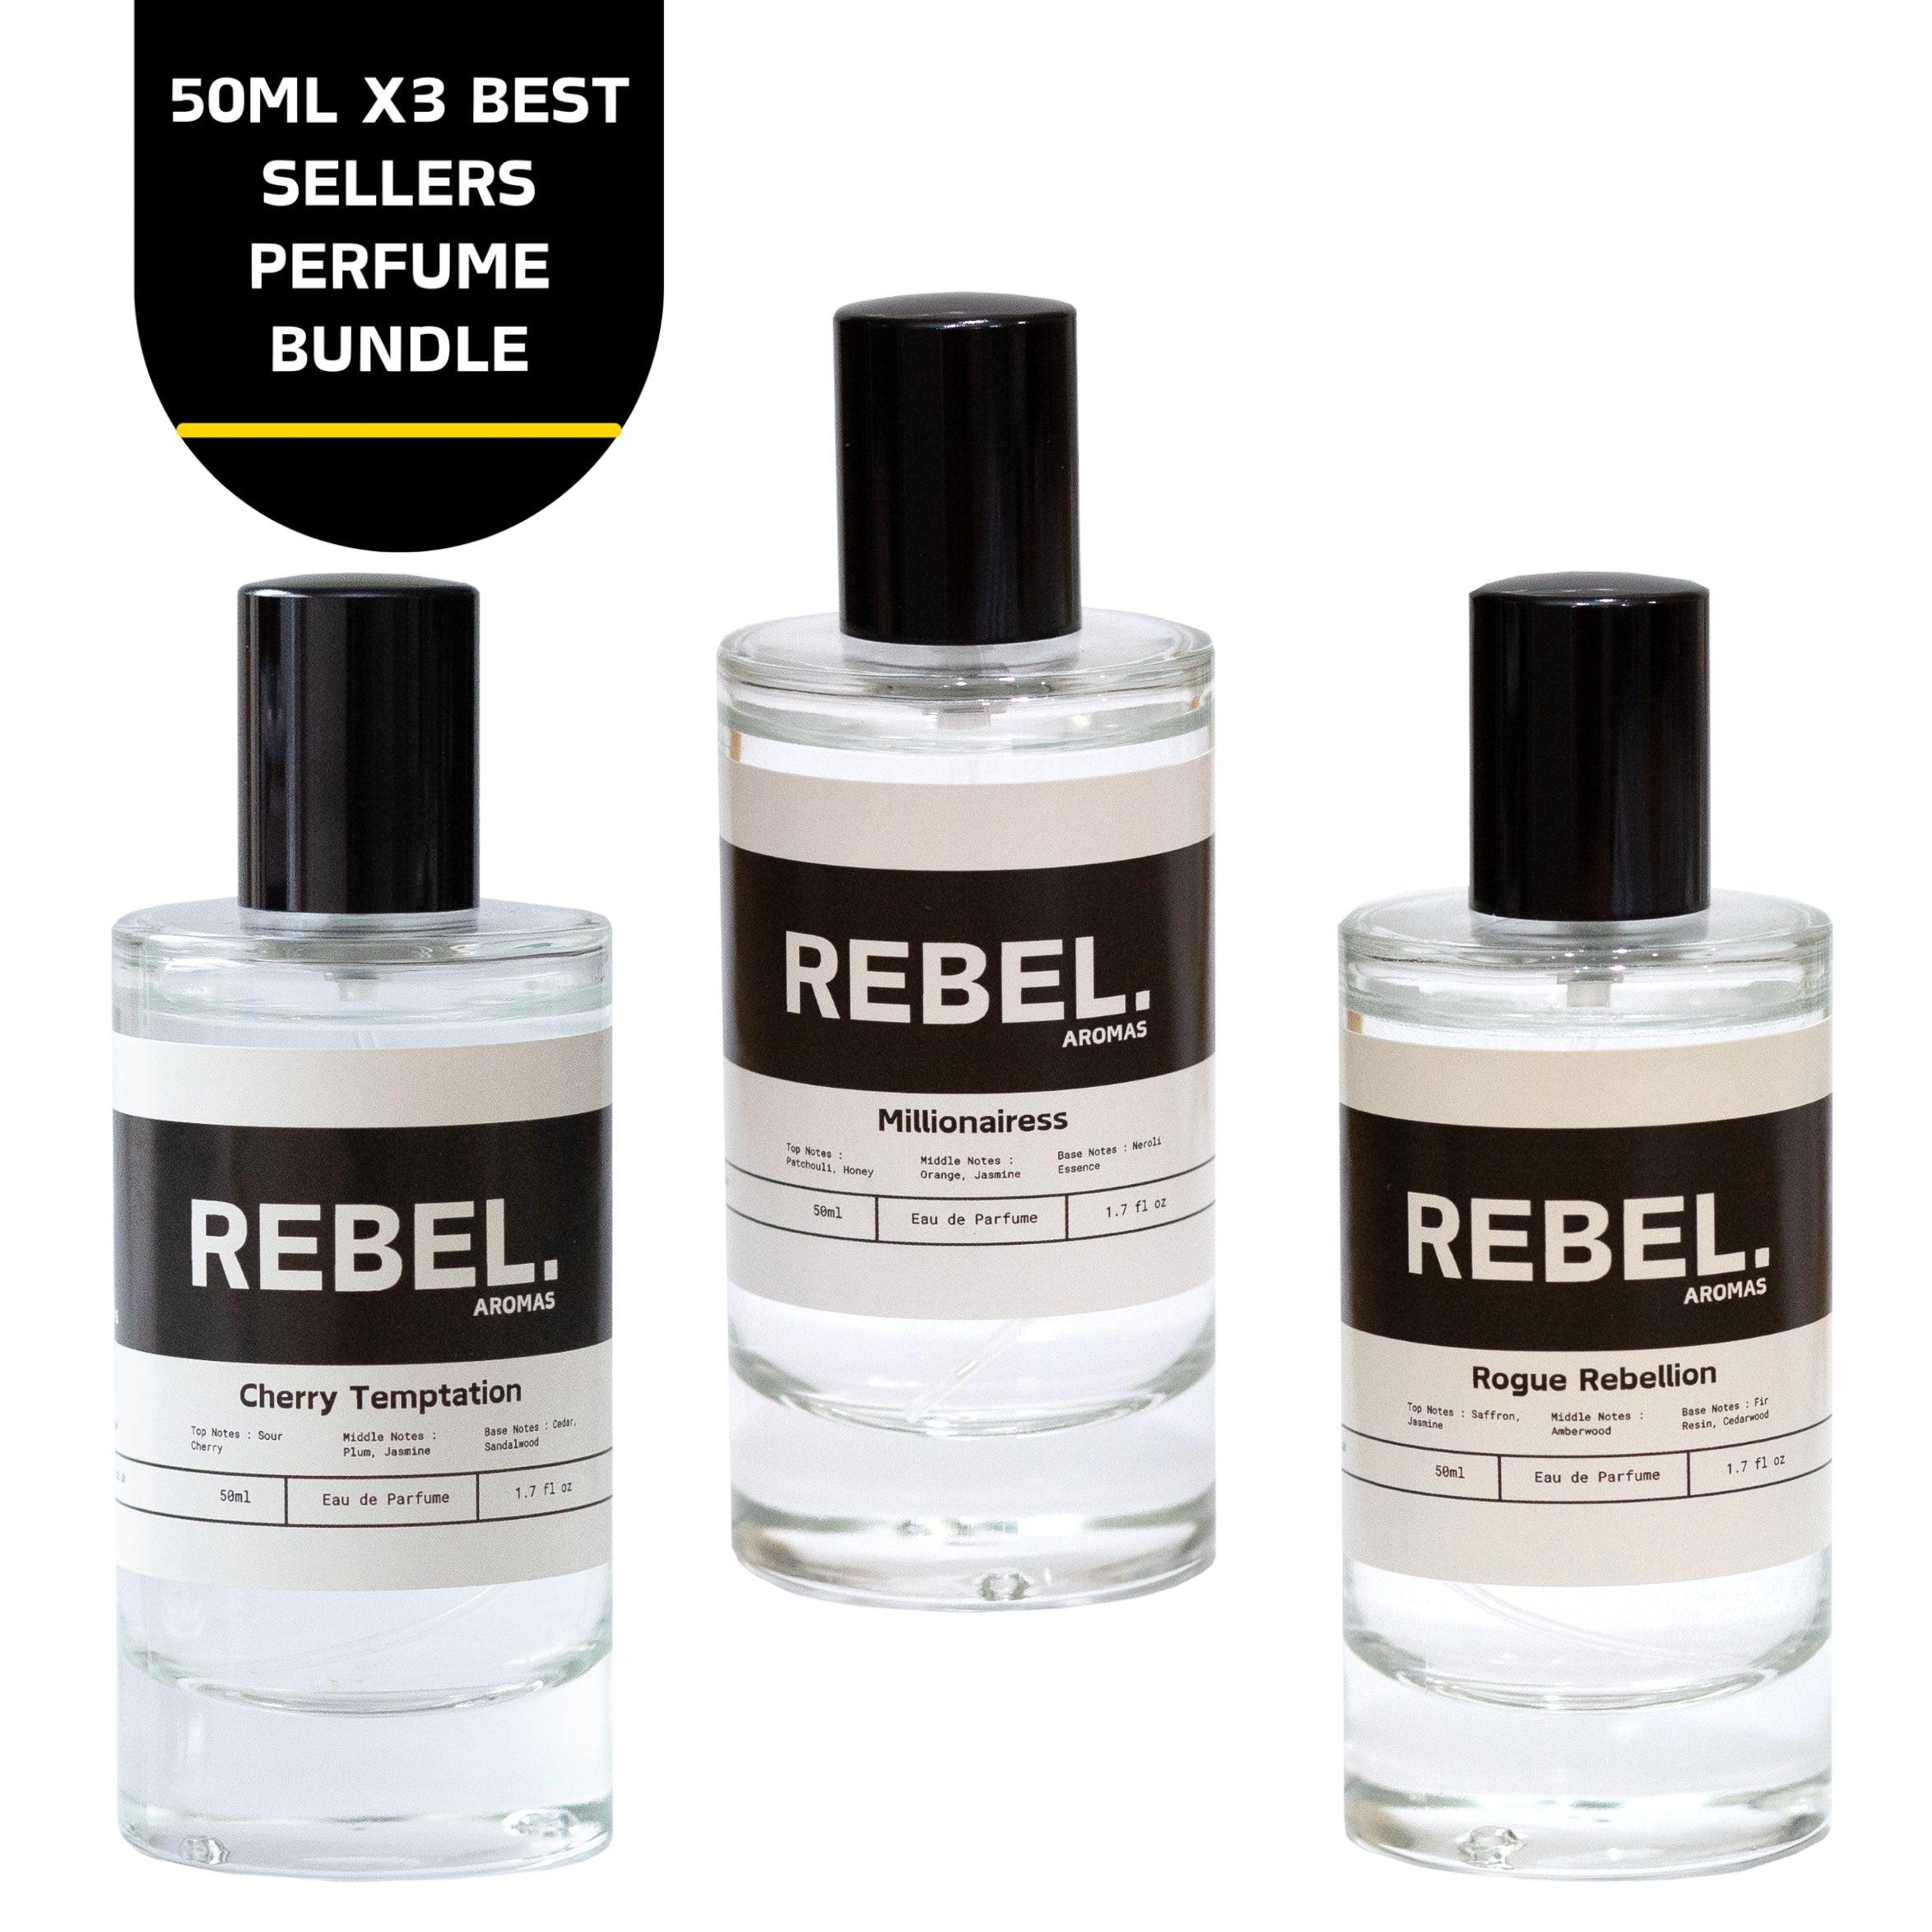 3x Best Sellers 50ml Perfume Bundle - Rebel Aromas